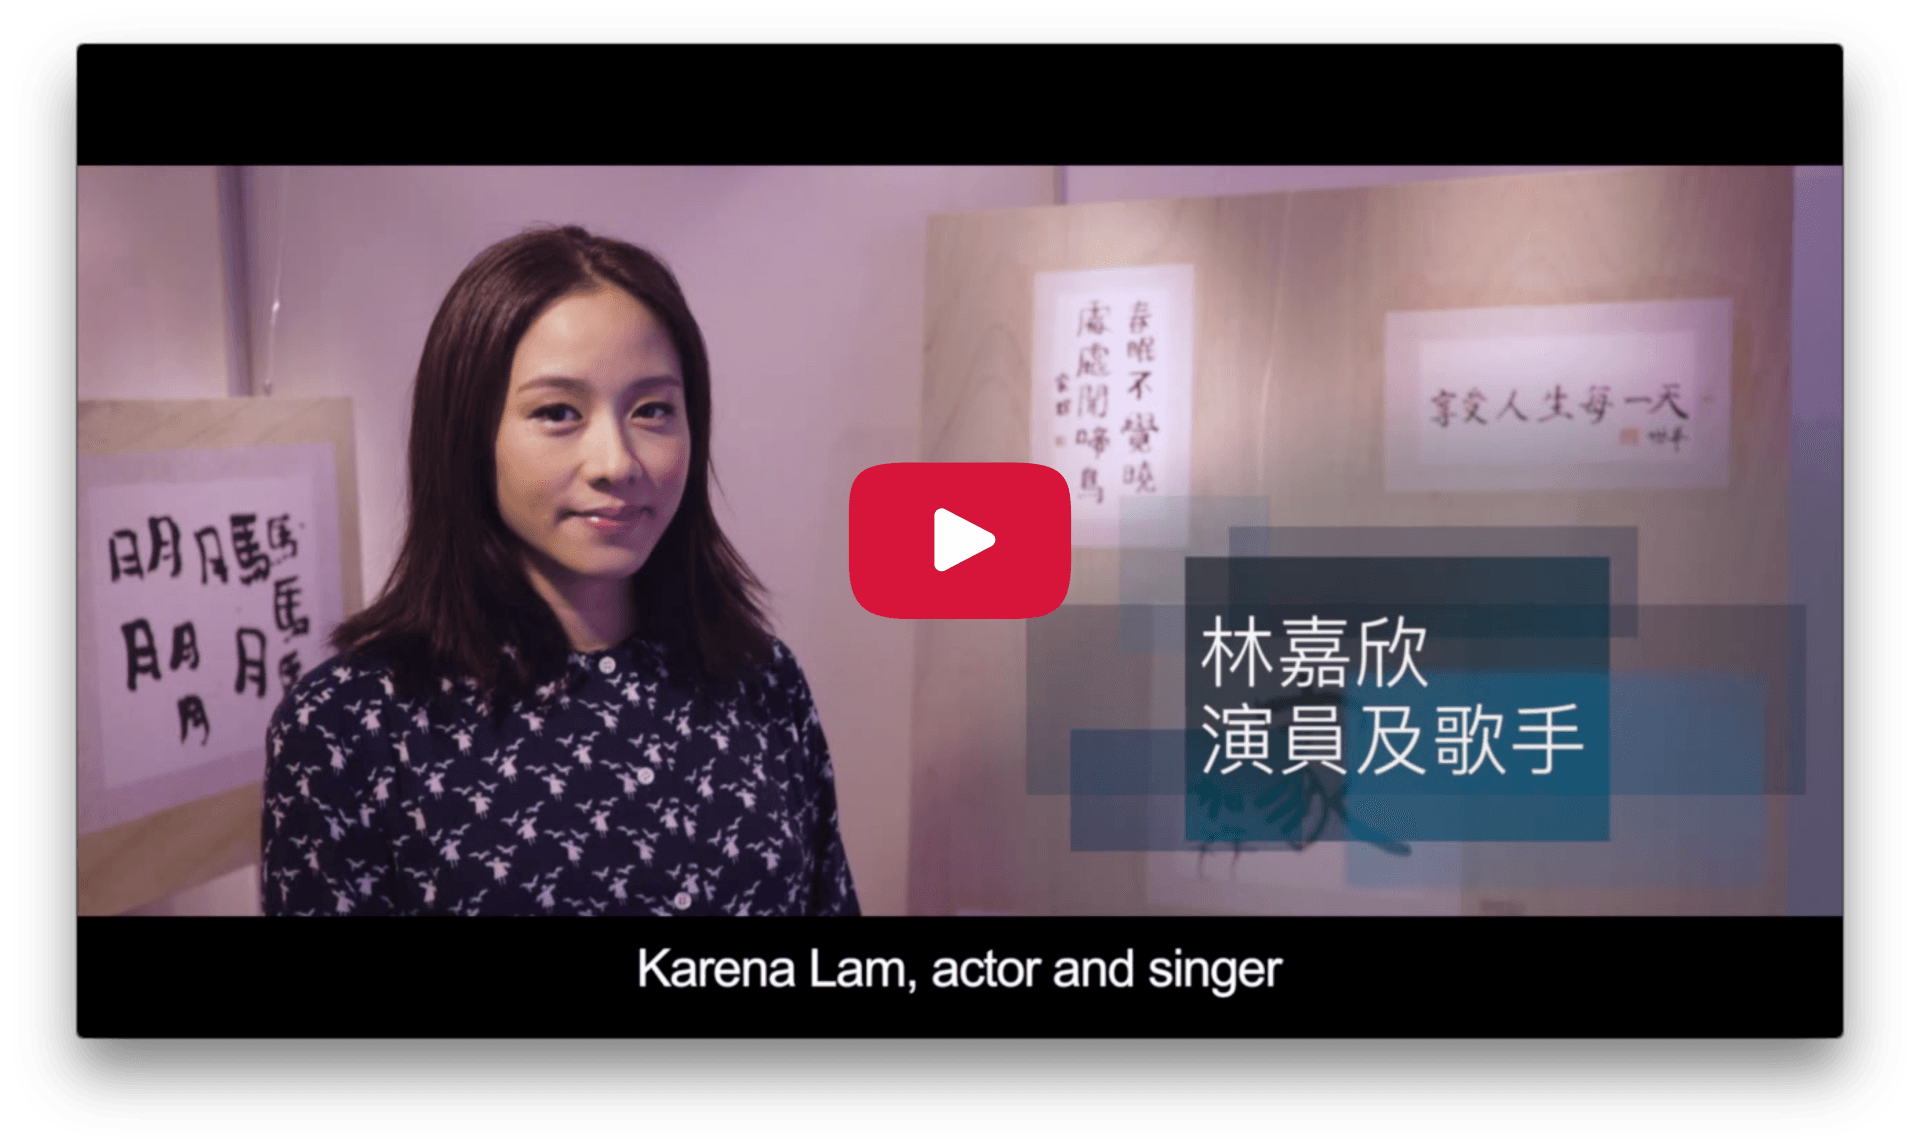 2016 Character Day Hong Kong Ambassador - Karena Lam